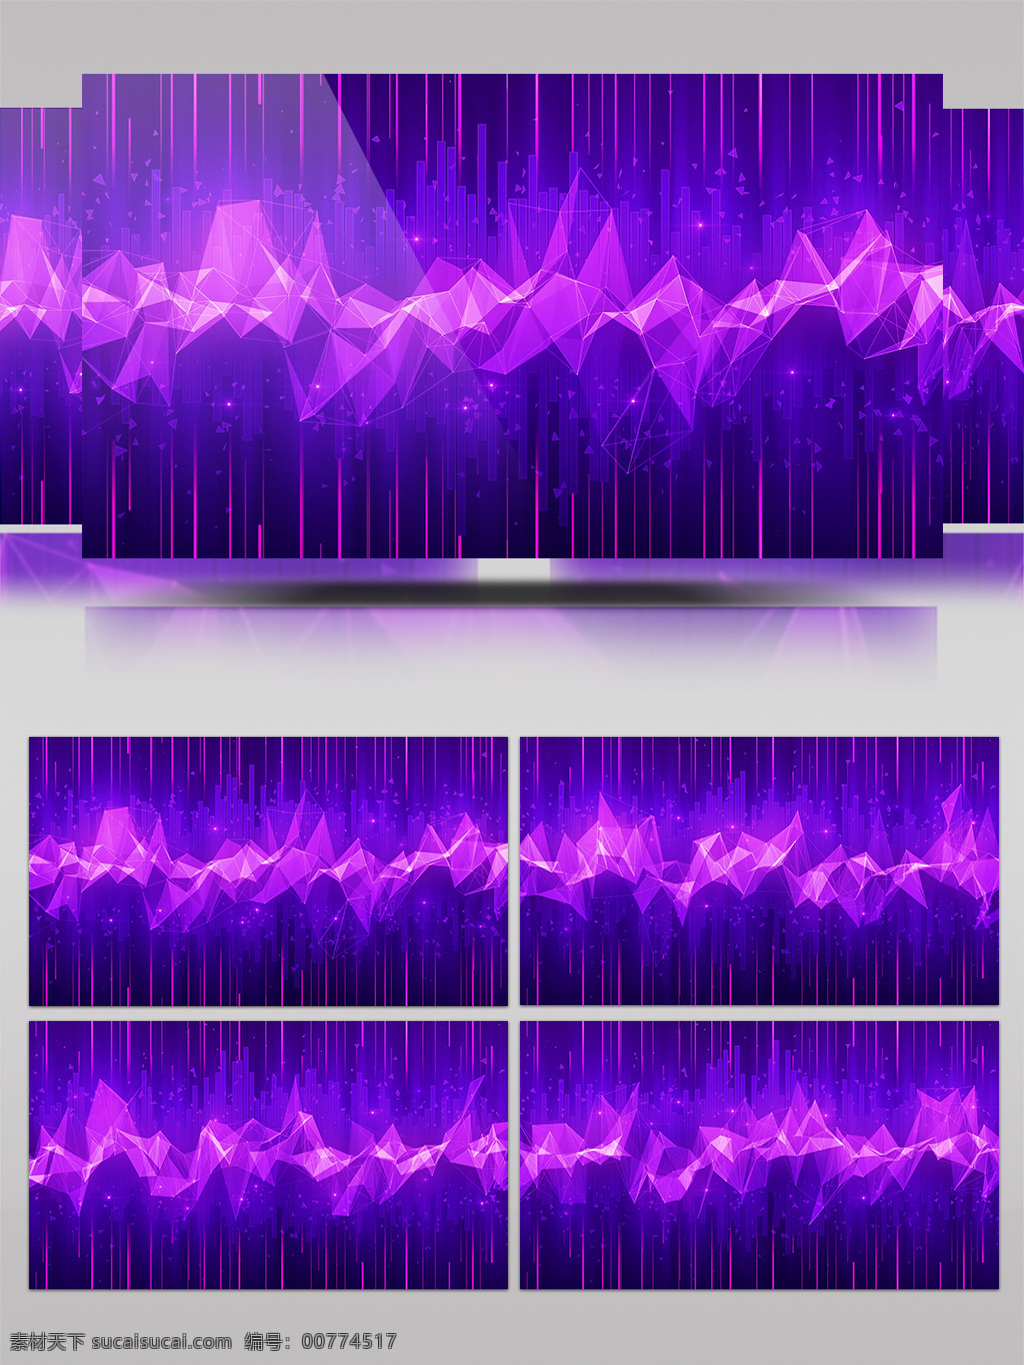 紫色 炫 酷 光 视频 炫酷华丽 节奏动感 光斑碎点 漂浮光 浮光掠影 酒吧舞台 渲染灯光 3d视频素材 灯光 特效